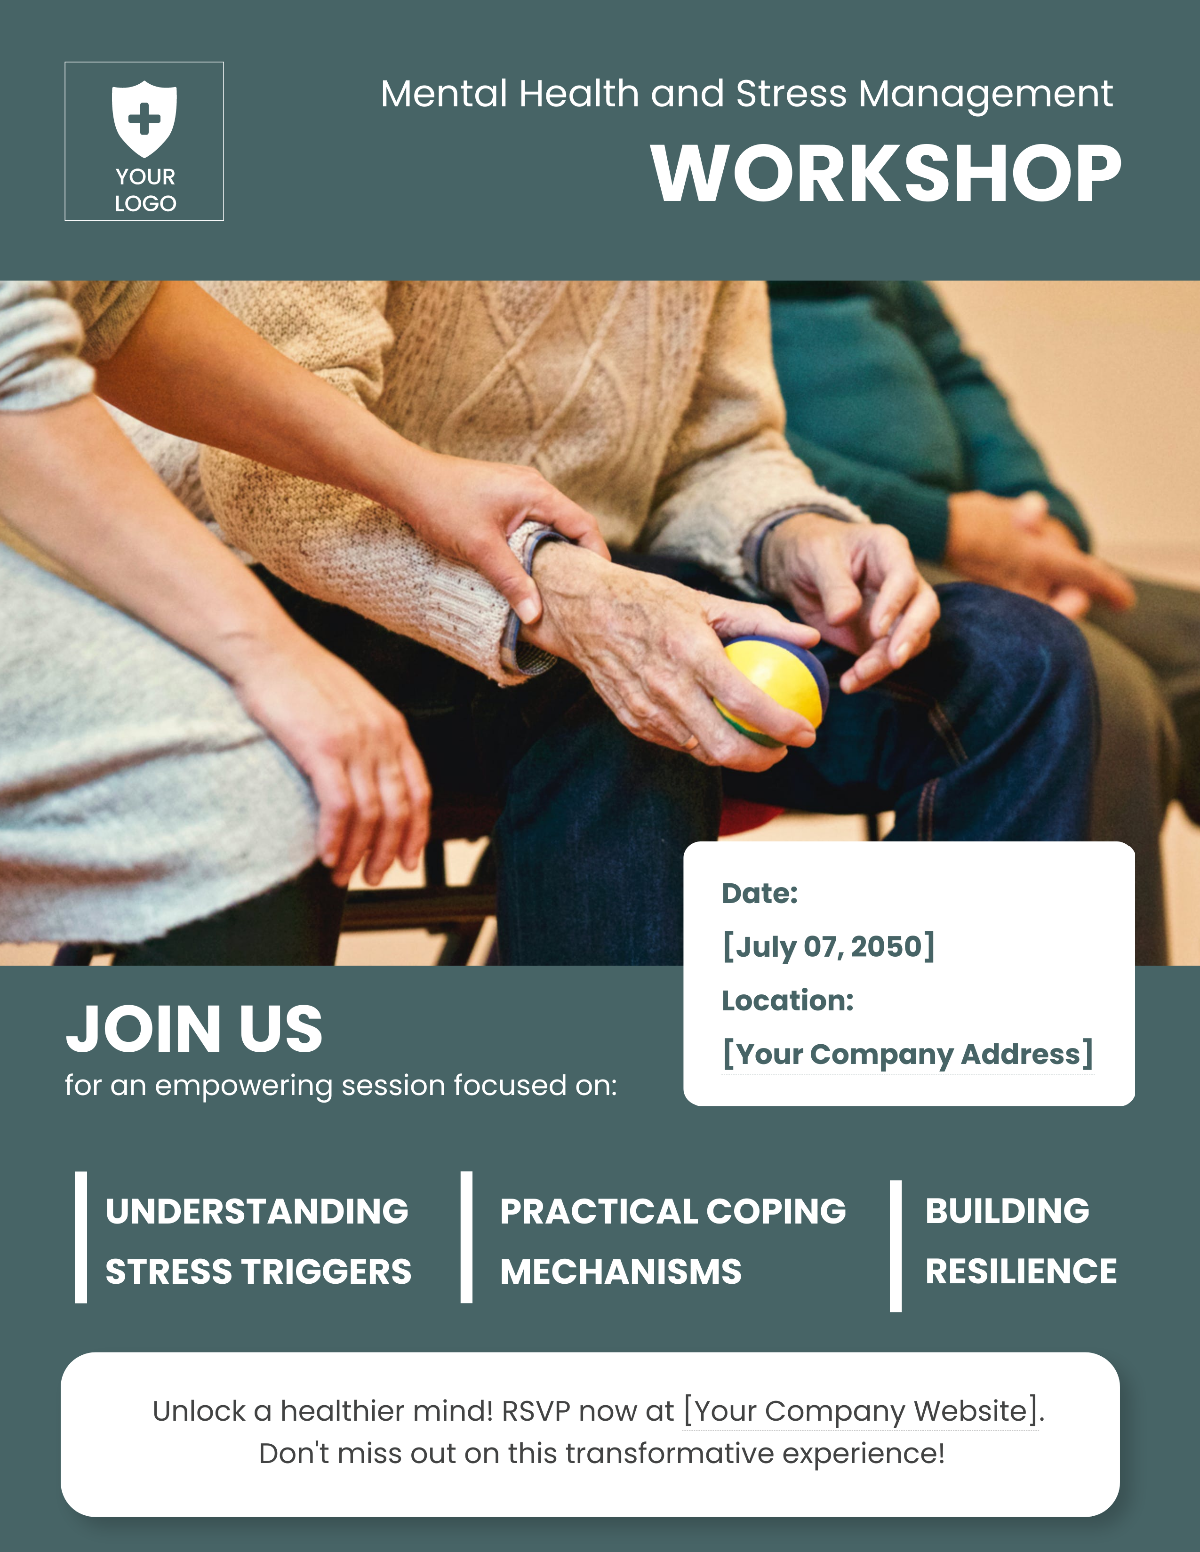 Mental Health and Stress Management Workshop Flyer